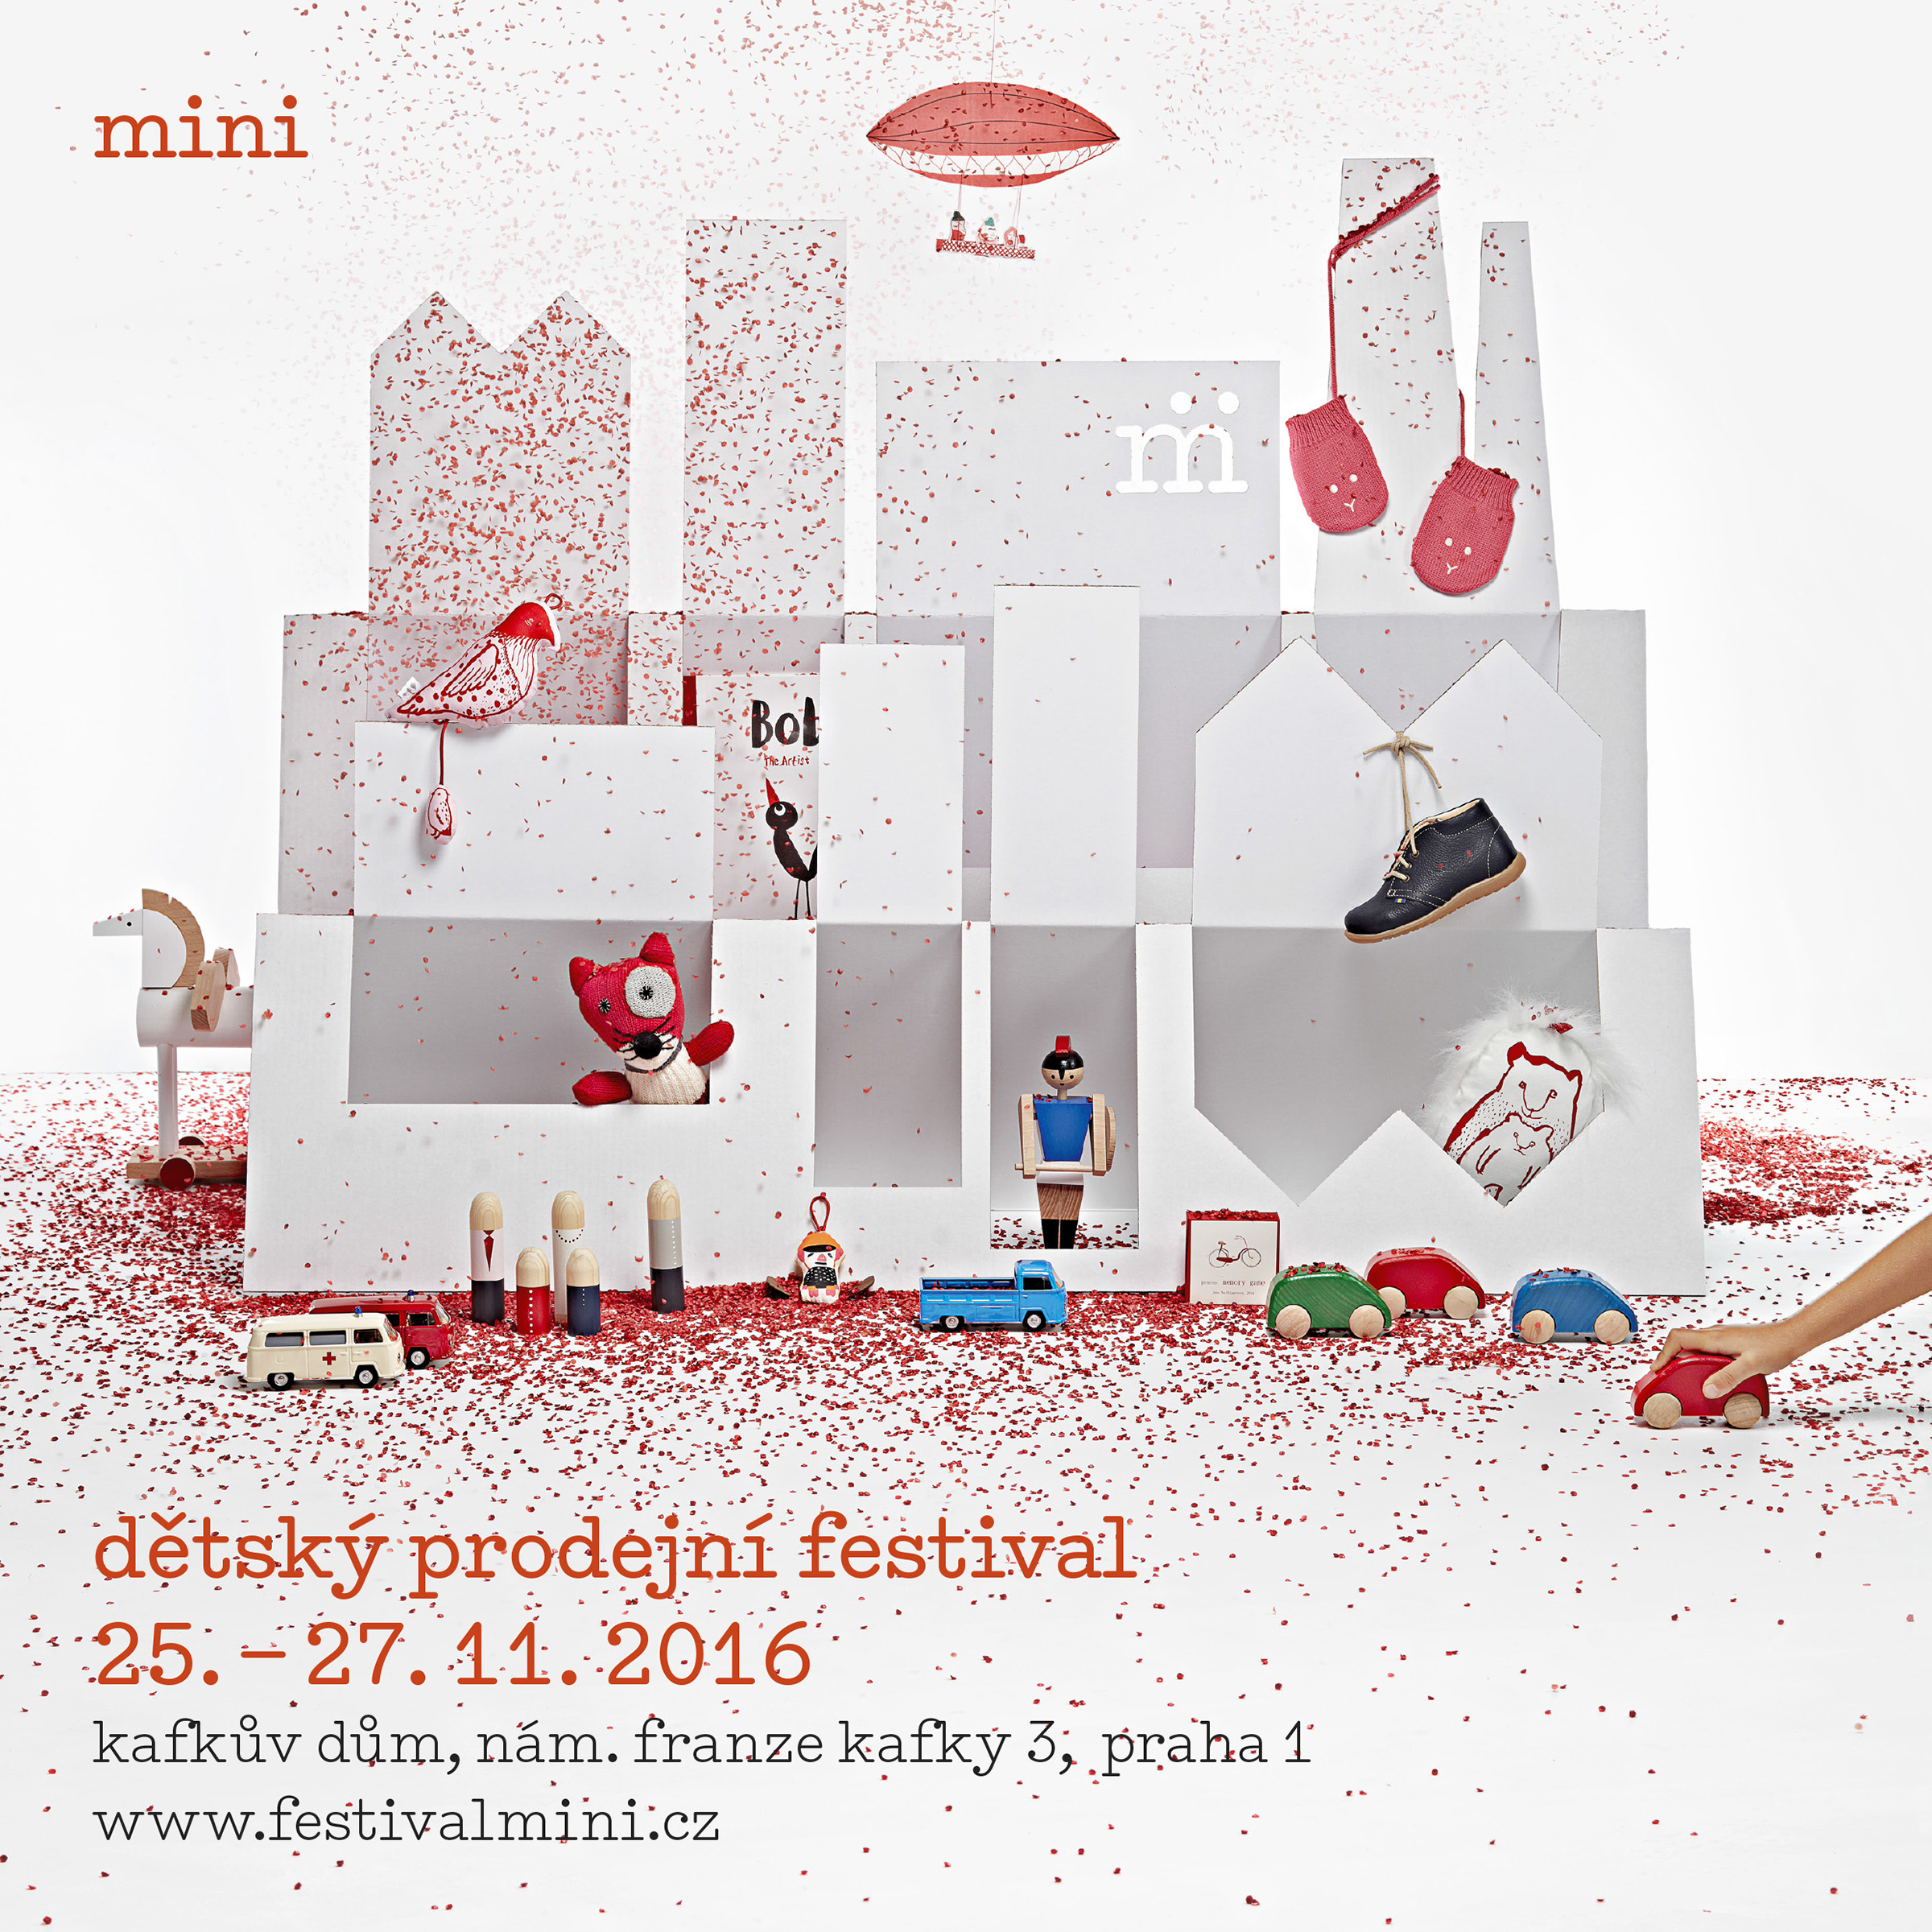 Dětský prodejní festival mini